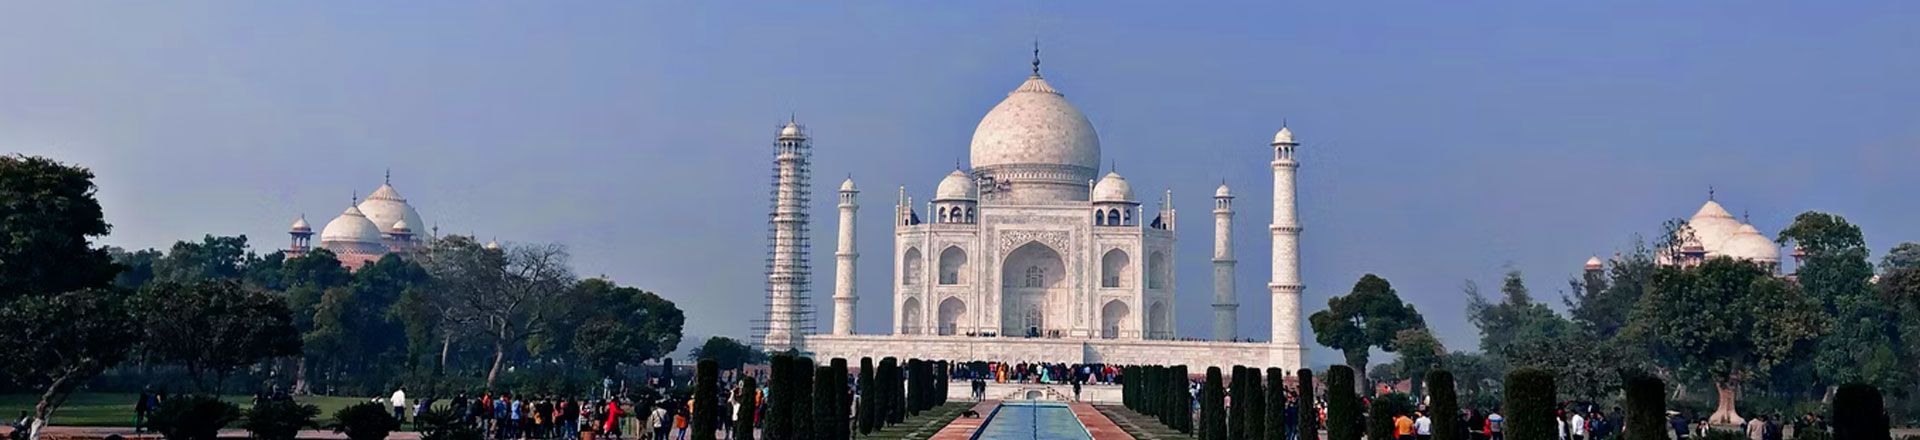 Sunrise Taj Mahal Tour From New Delhi